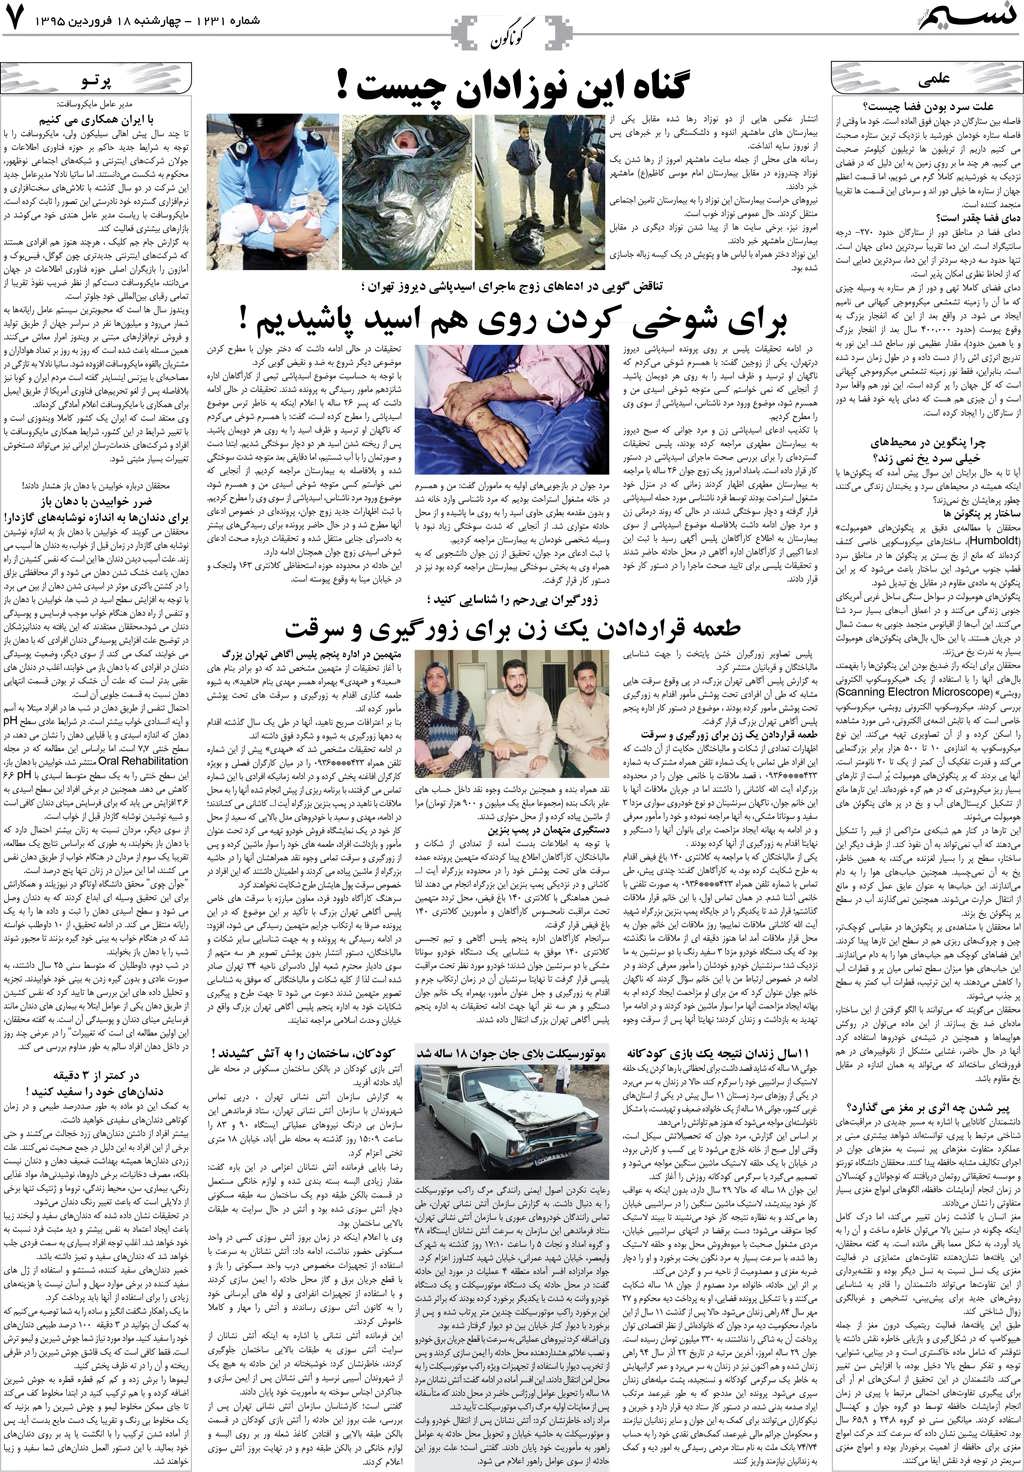 صفحه گوناگون روزنامه نسیم شماره 1231